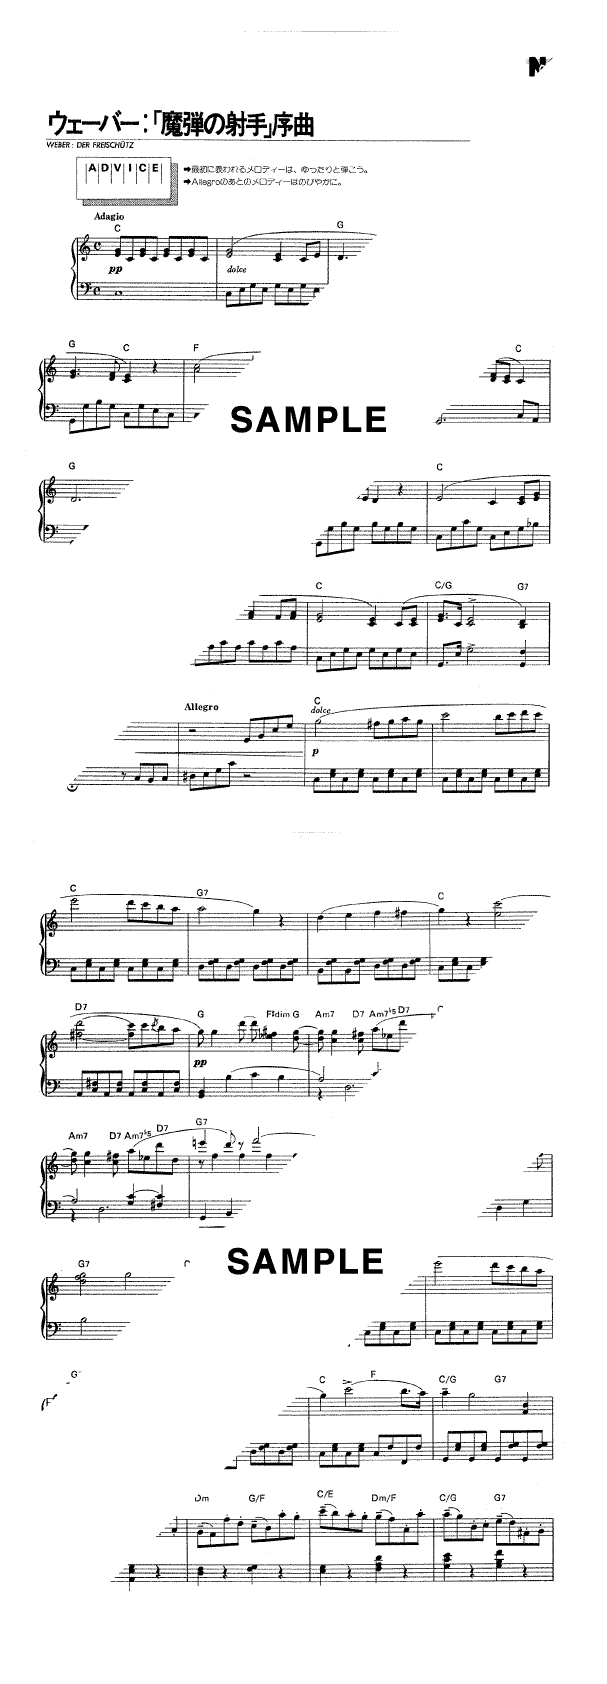 歌劇《魔弾の射手》序曲                                                                                                                            ウェーバー                                                                                                                                                                                                                                     ピアノ・ソロ譜                                                                                                                                                                  /                             初中級                                                                         / 提供:                        KMP